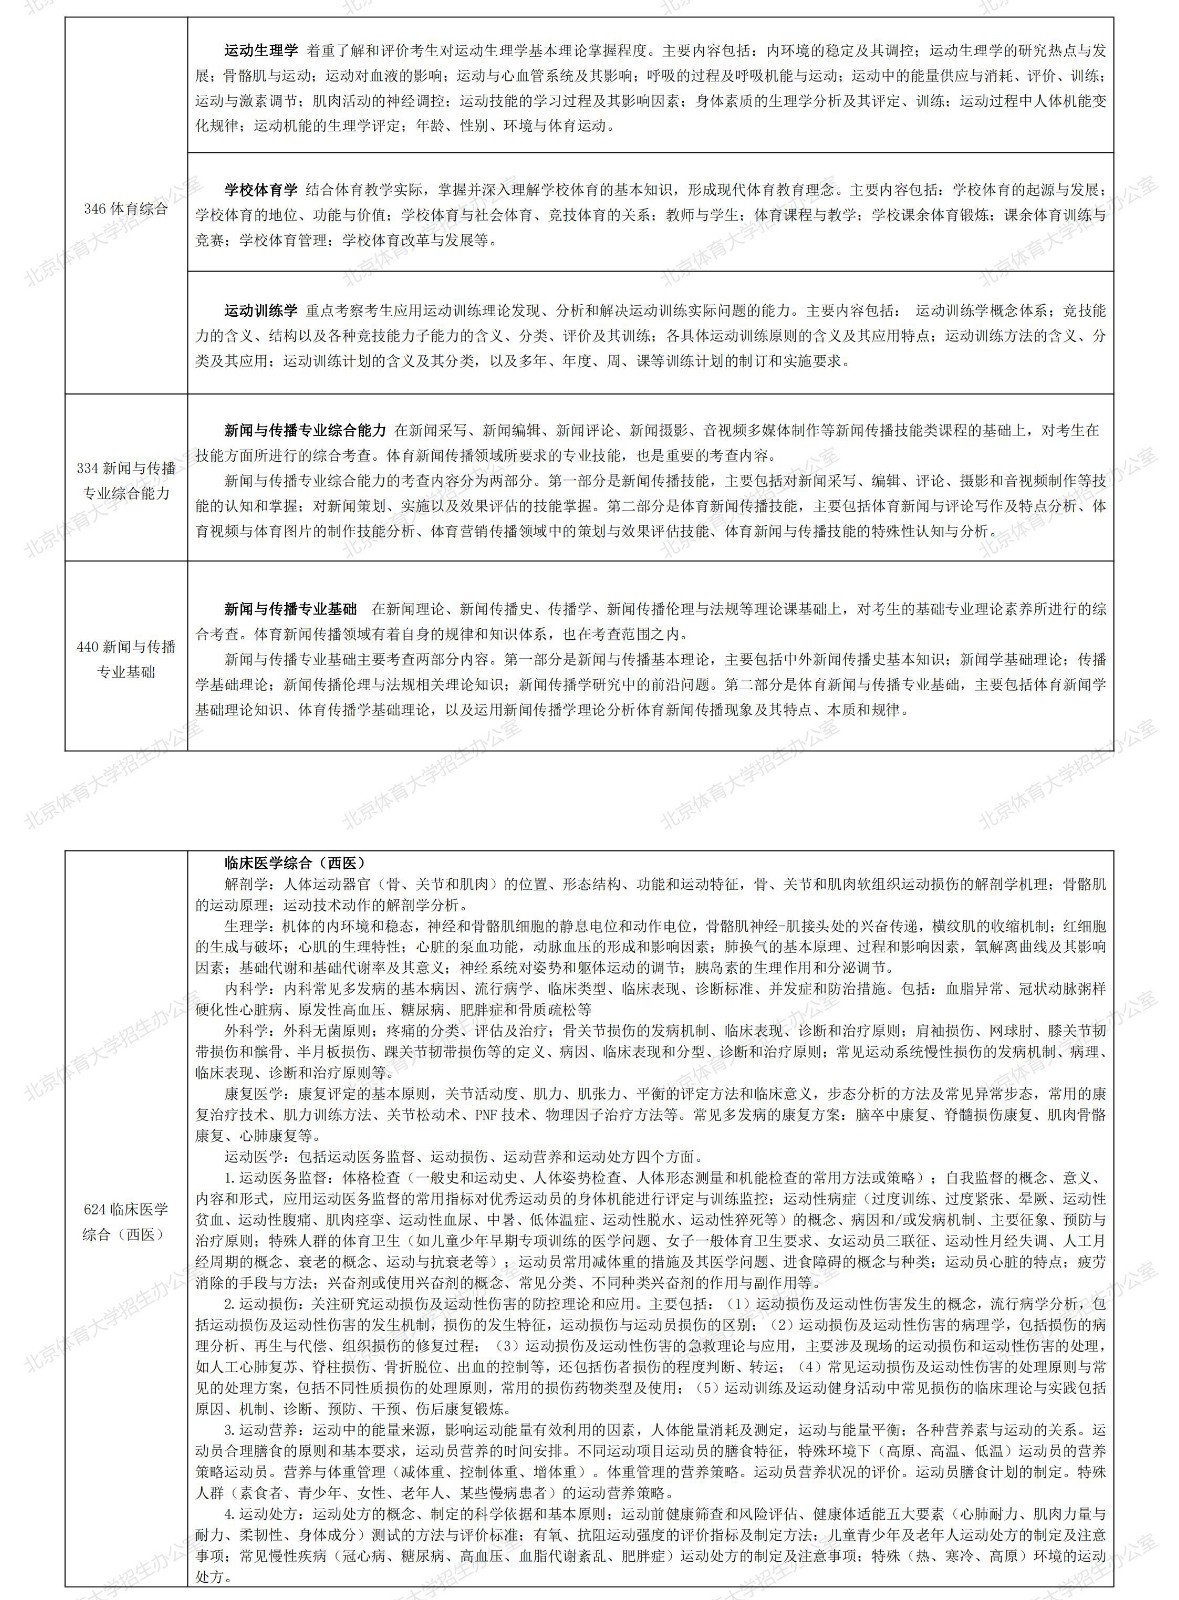 2022年北京体育大学硕士研究生自命题科目考试内容说明及题型设置